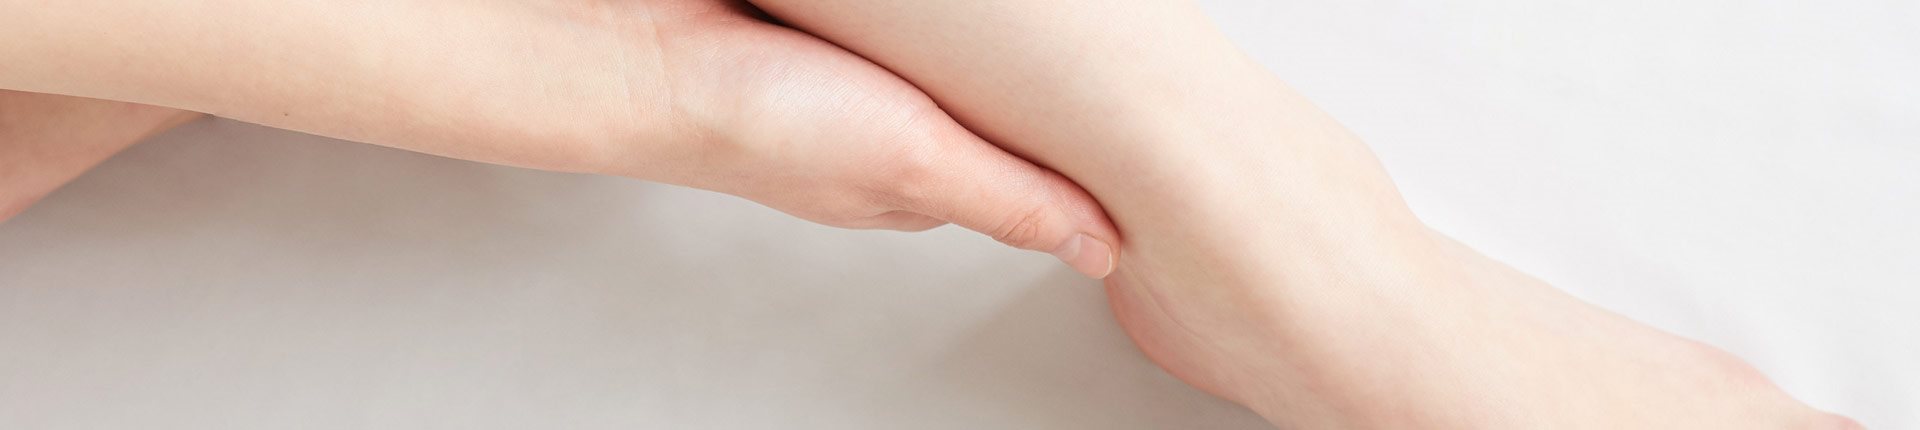 Jak sobie poradzić z opuchniętymi stopami?